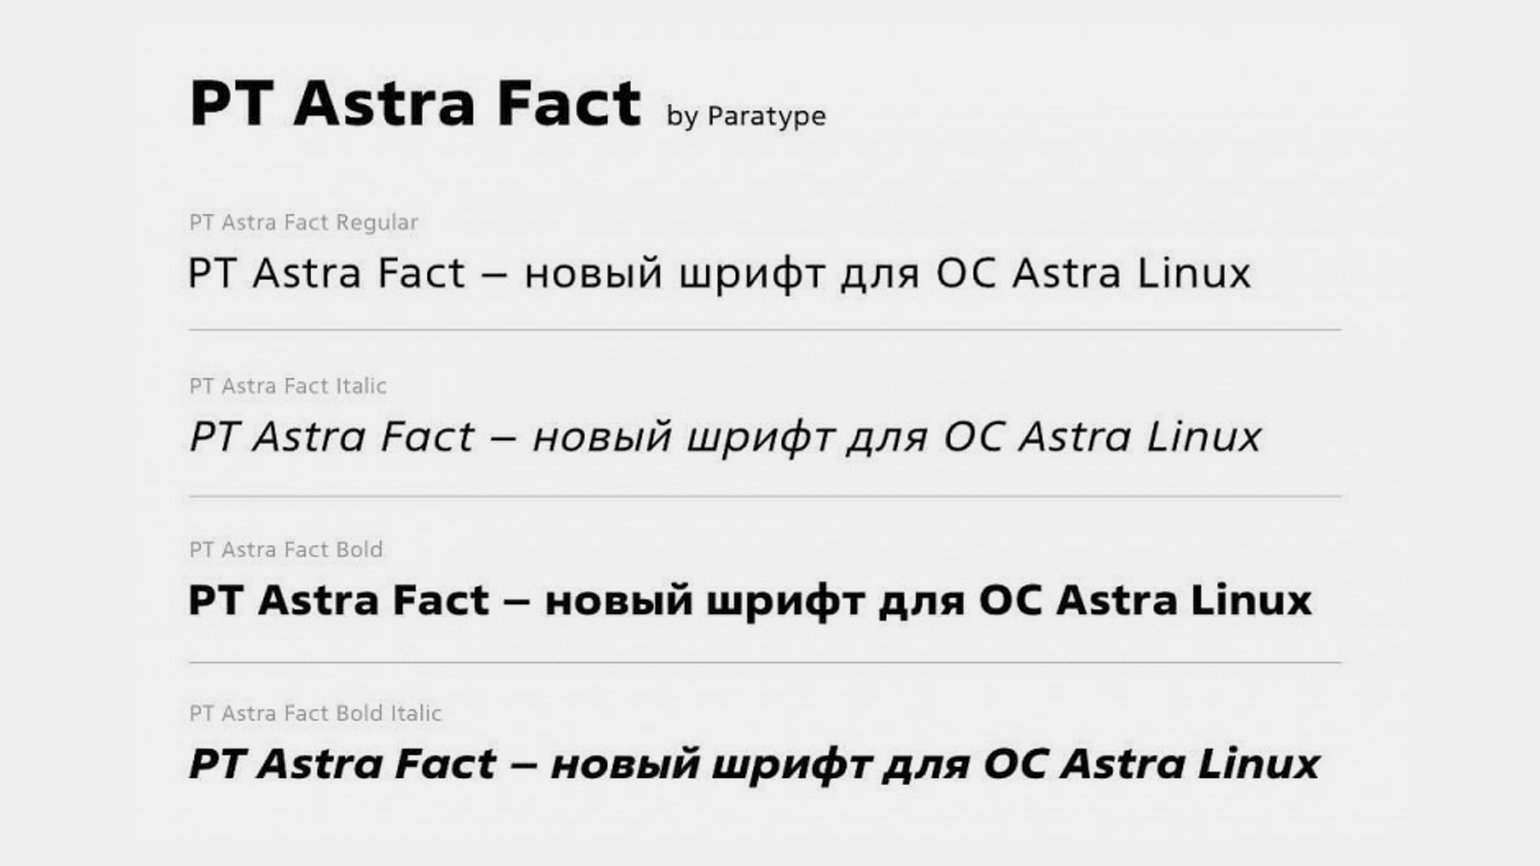 Пример использования нового шрифта от Paratype PT Astra Fact